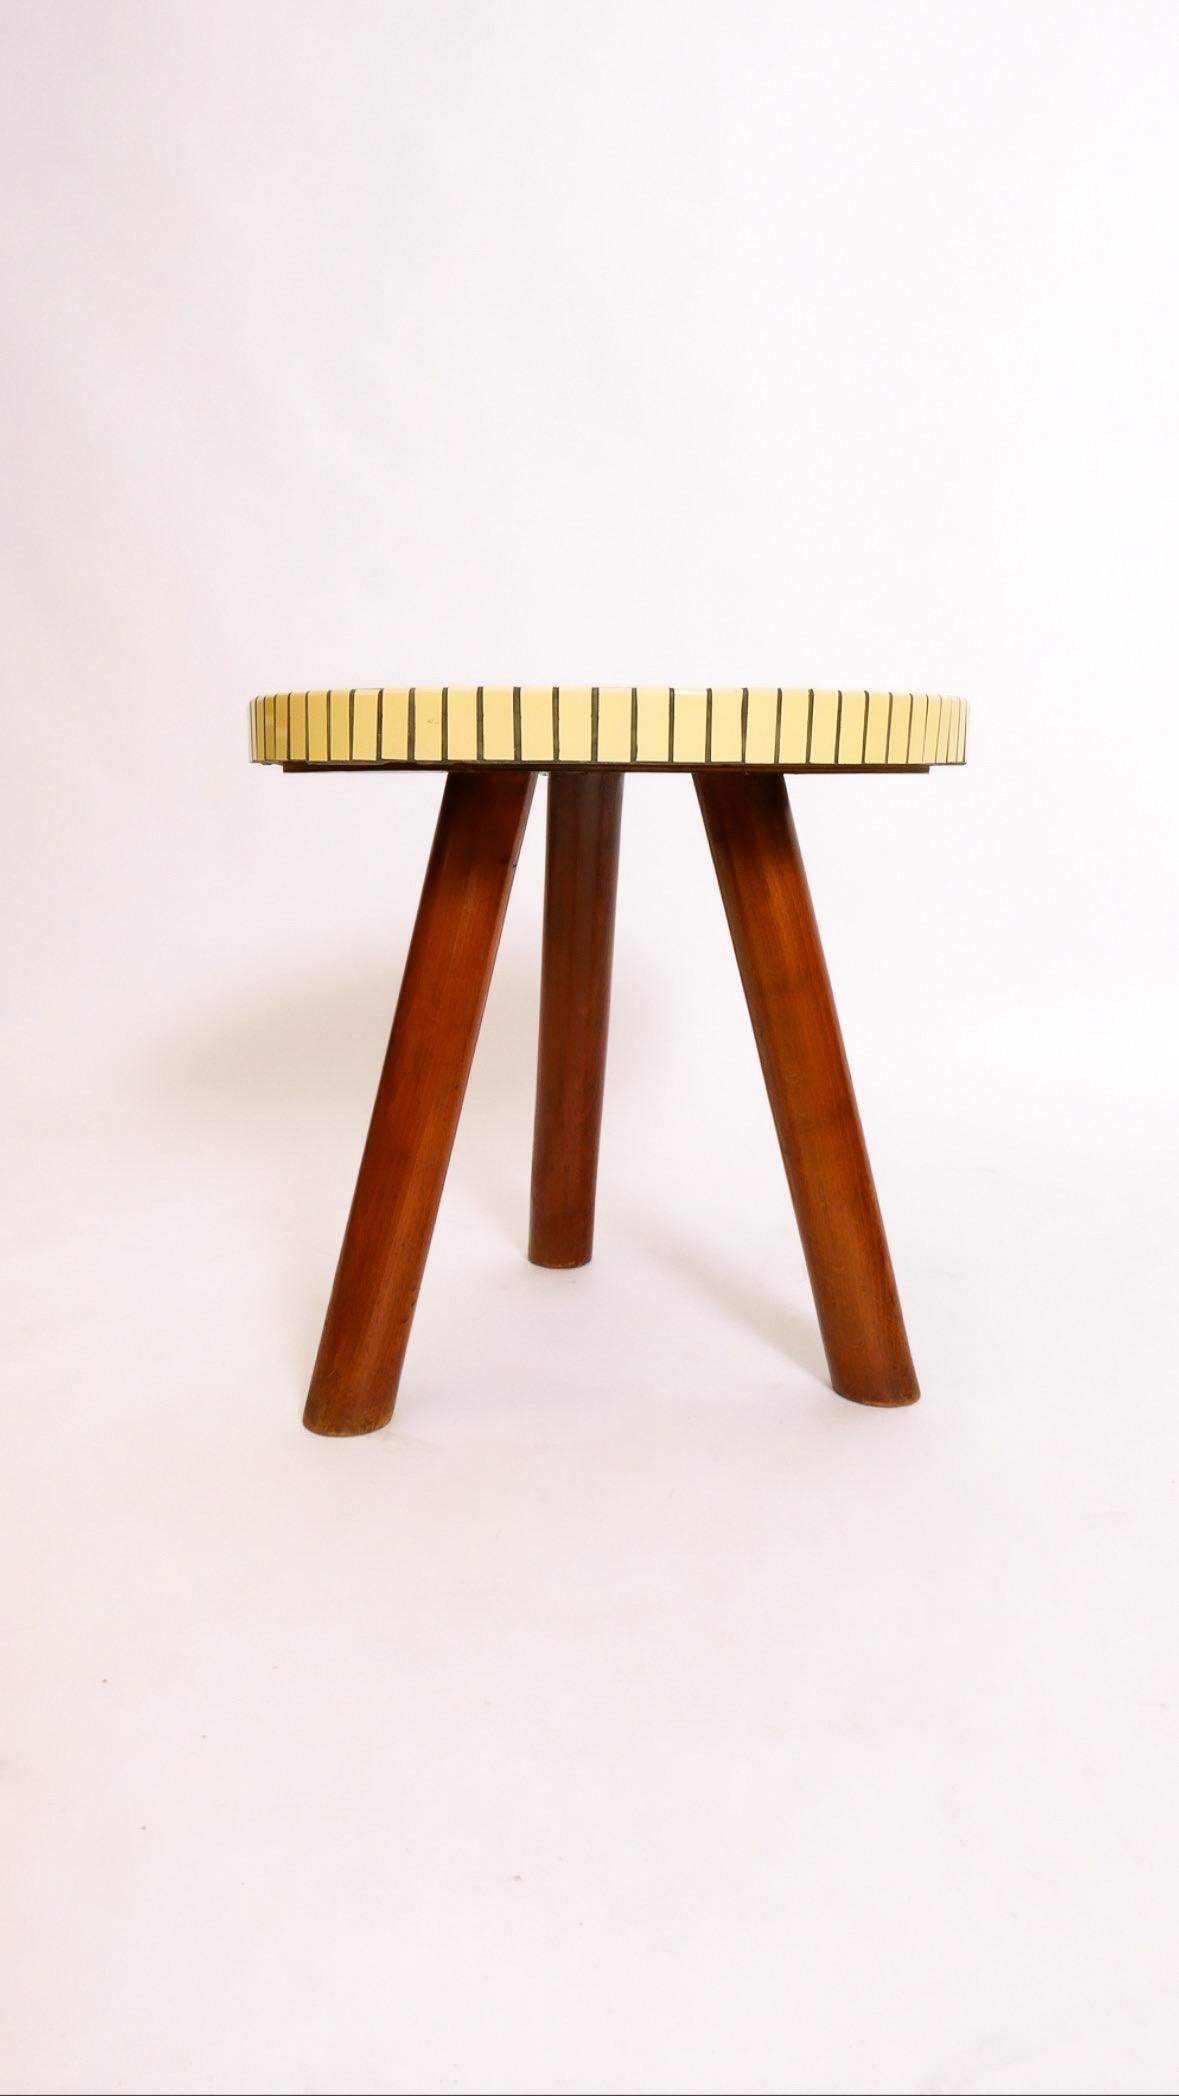 Il s'agit d'une délicieuse table dans le style d'Otto Færge. Fabriqué par un ébéniste danois vers les années 1950-60, il s'agit d'un plateau en mosaïque de carreaux de céramique sur une base en hêtre massif teinté. Trois pieds club assurent la